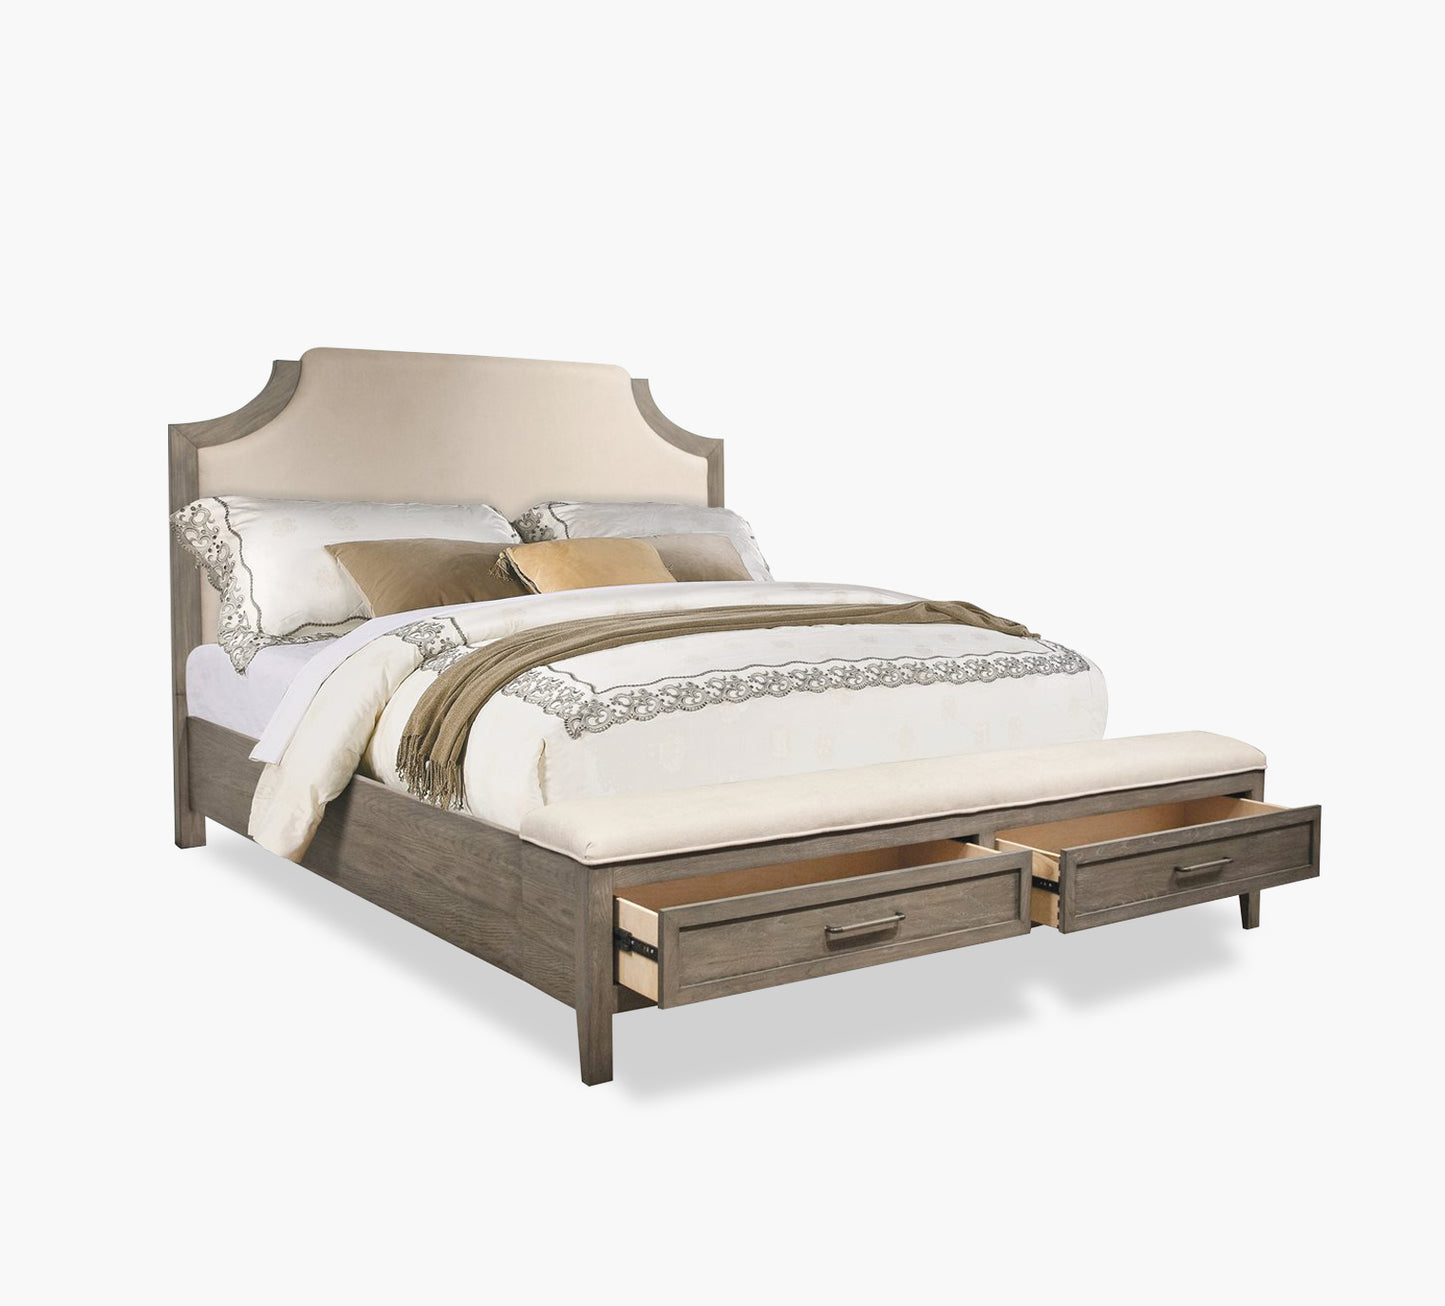 Halston Queen Upholstered Storage Bed